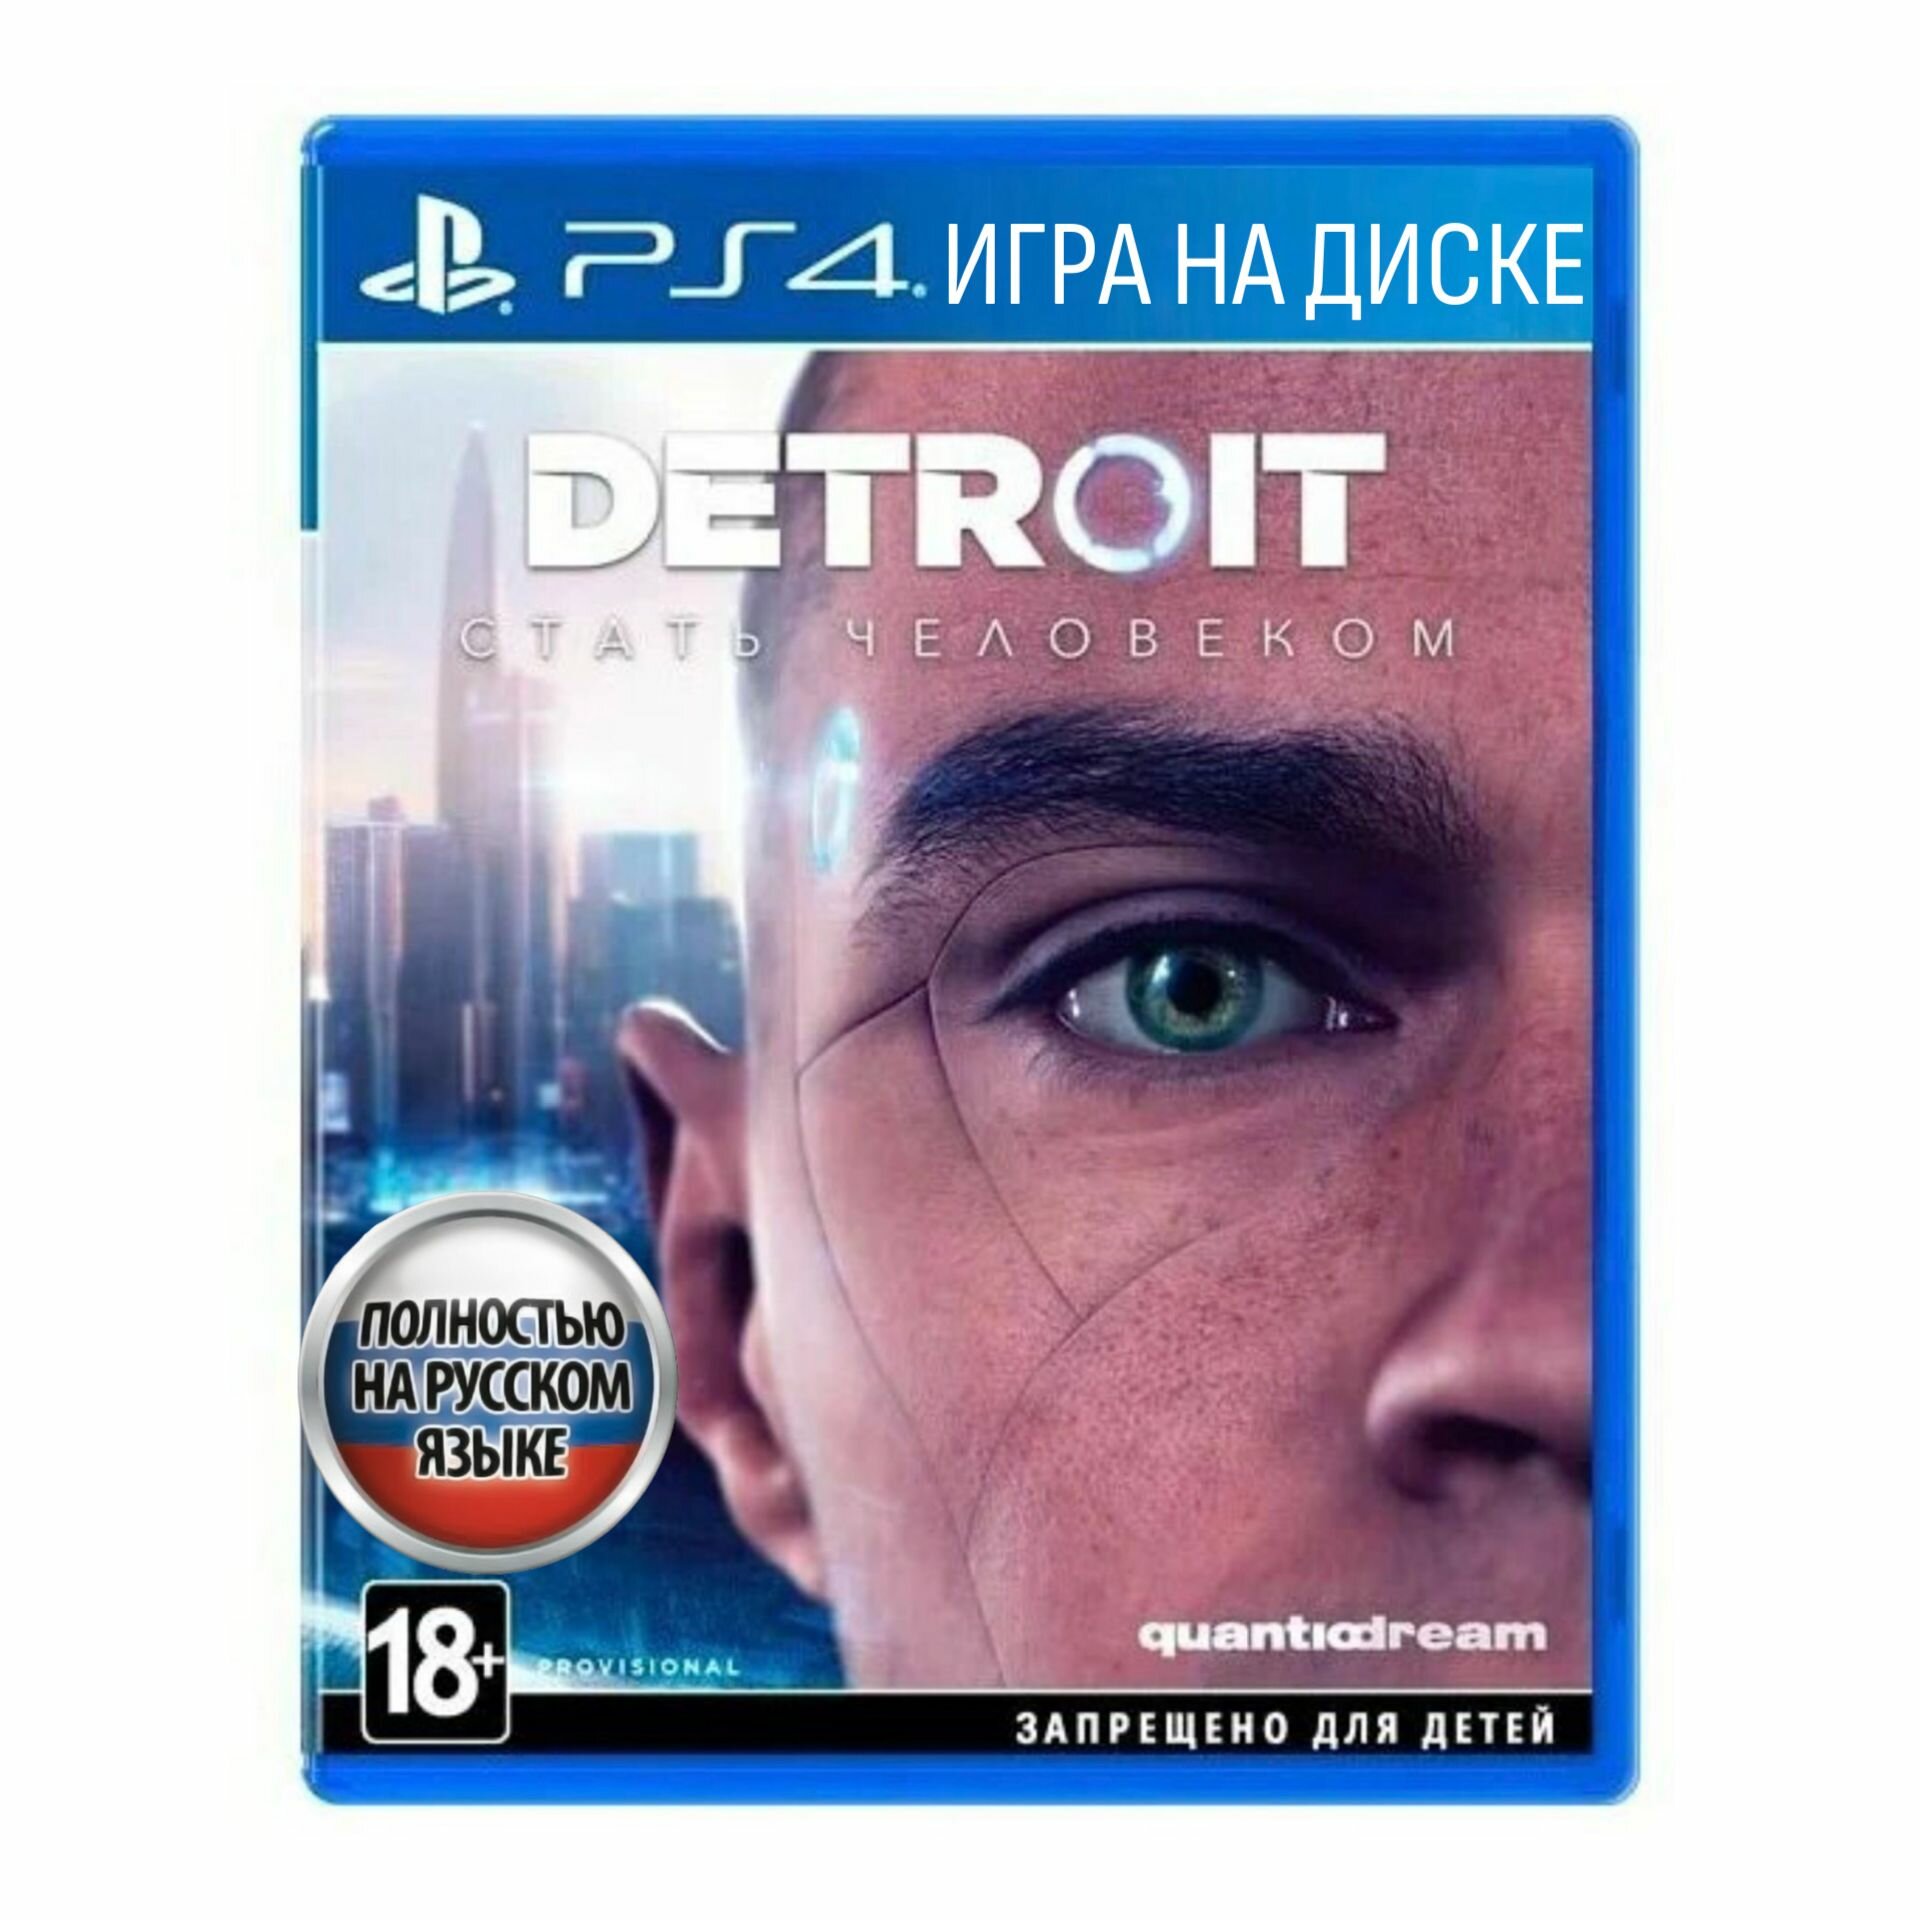 Игра Detroit: Стать человеком (PlayStation 4 Русская версия)